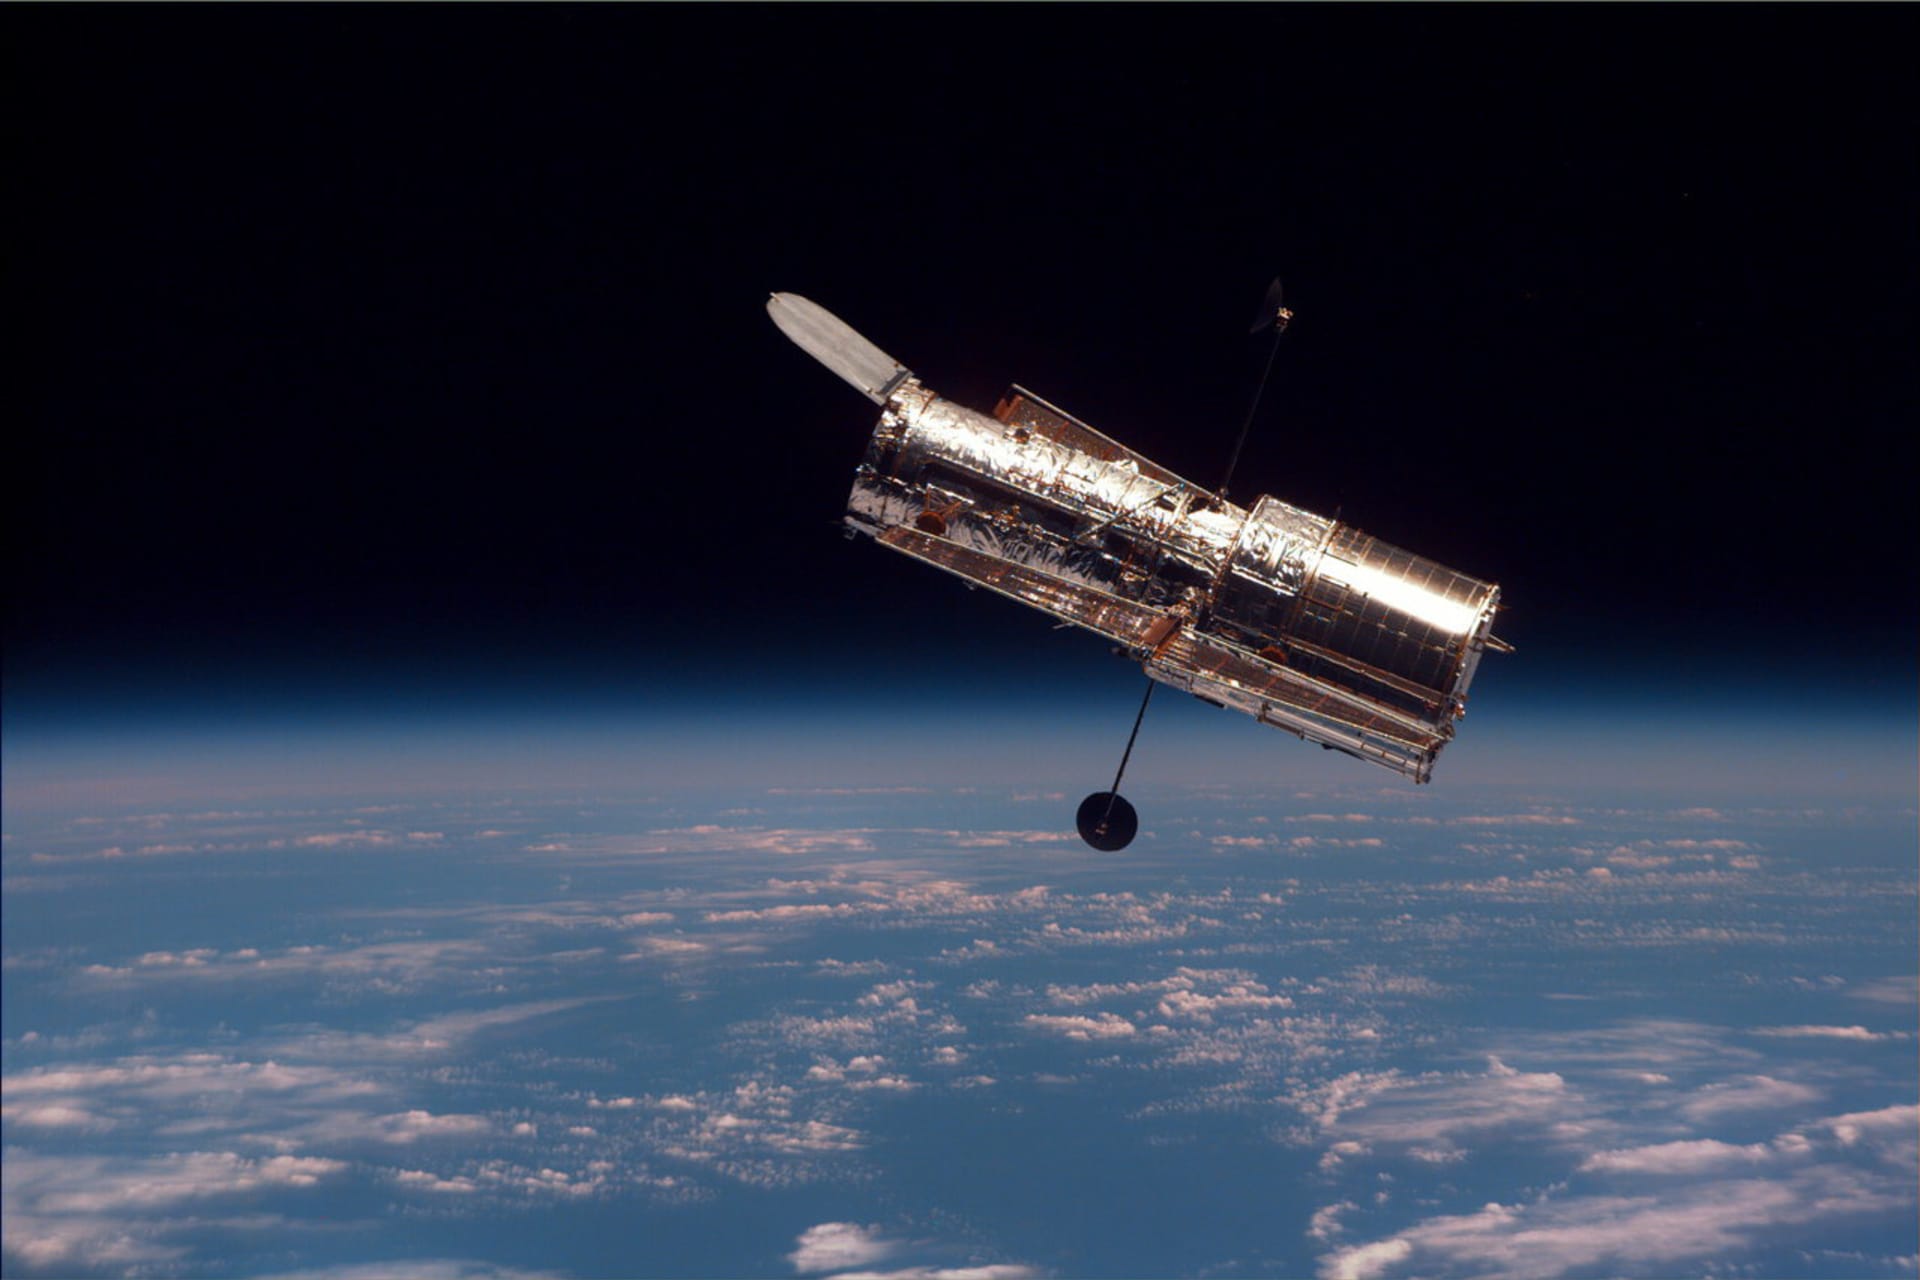 Hubbleův dalekohled